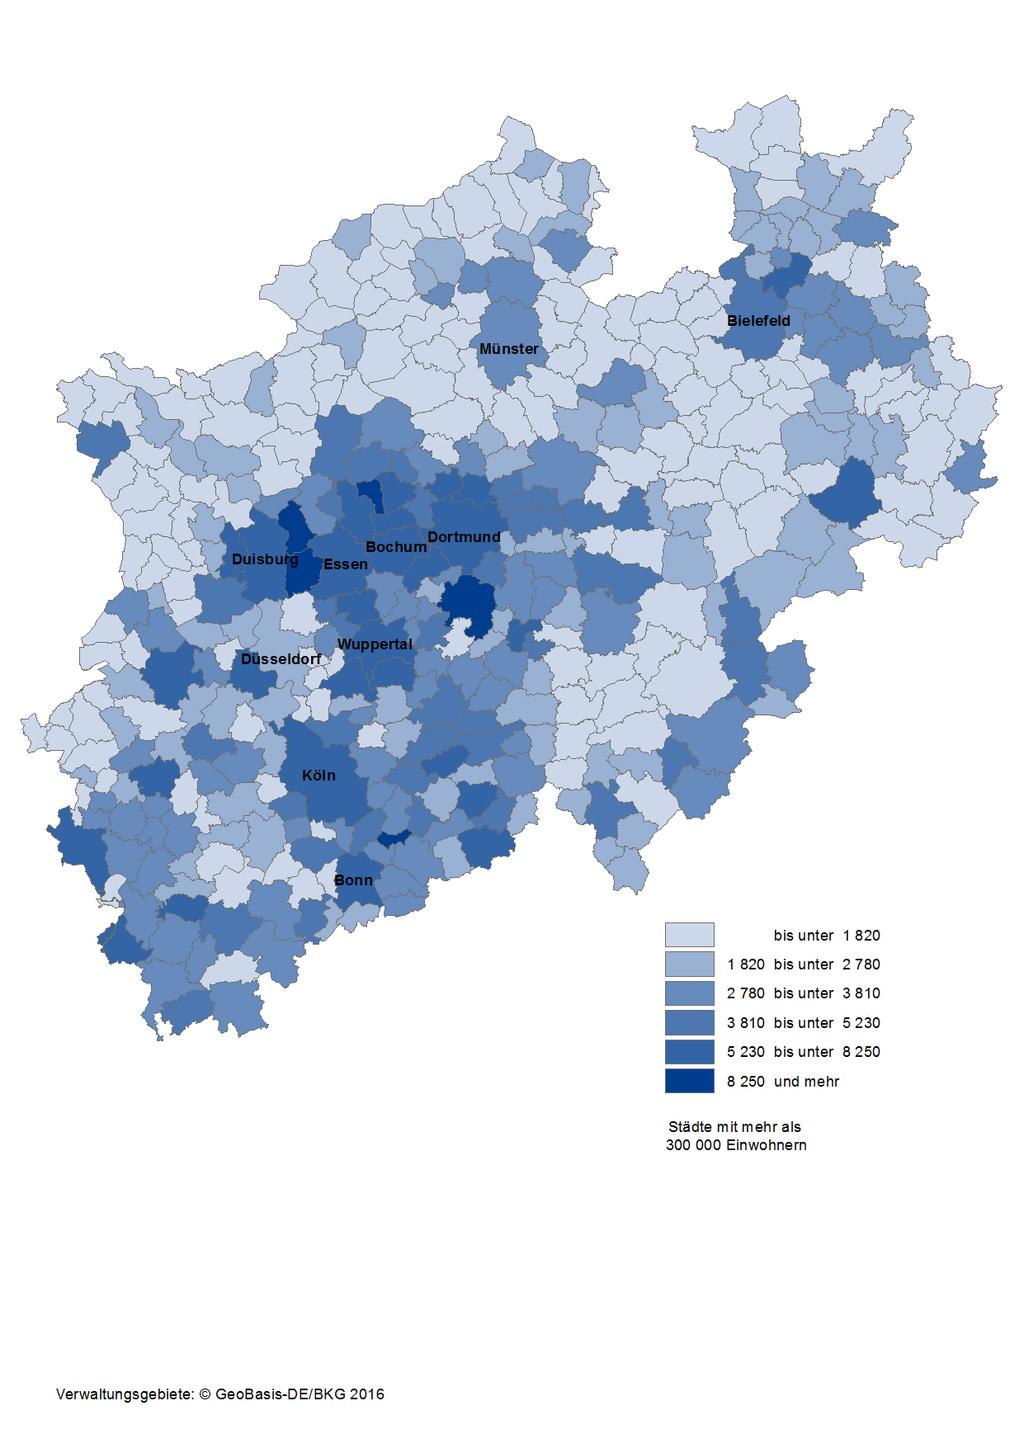 Karte 14: Integrierte kommunale Schulden der kreisangehörigen Gemeinden und kreisfreien Städte in Nordrhein-Westfalen am 31.12.